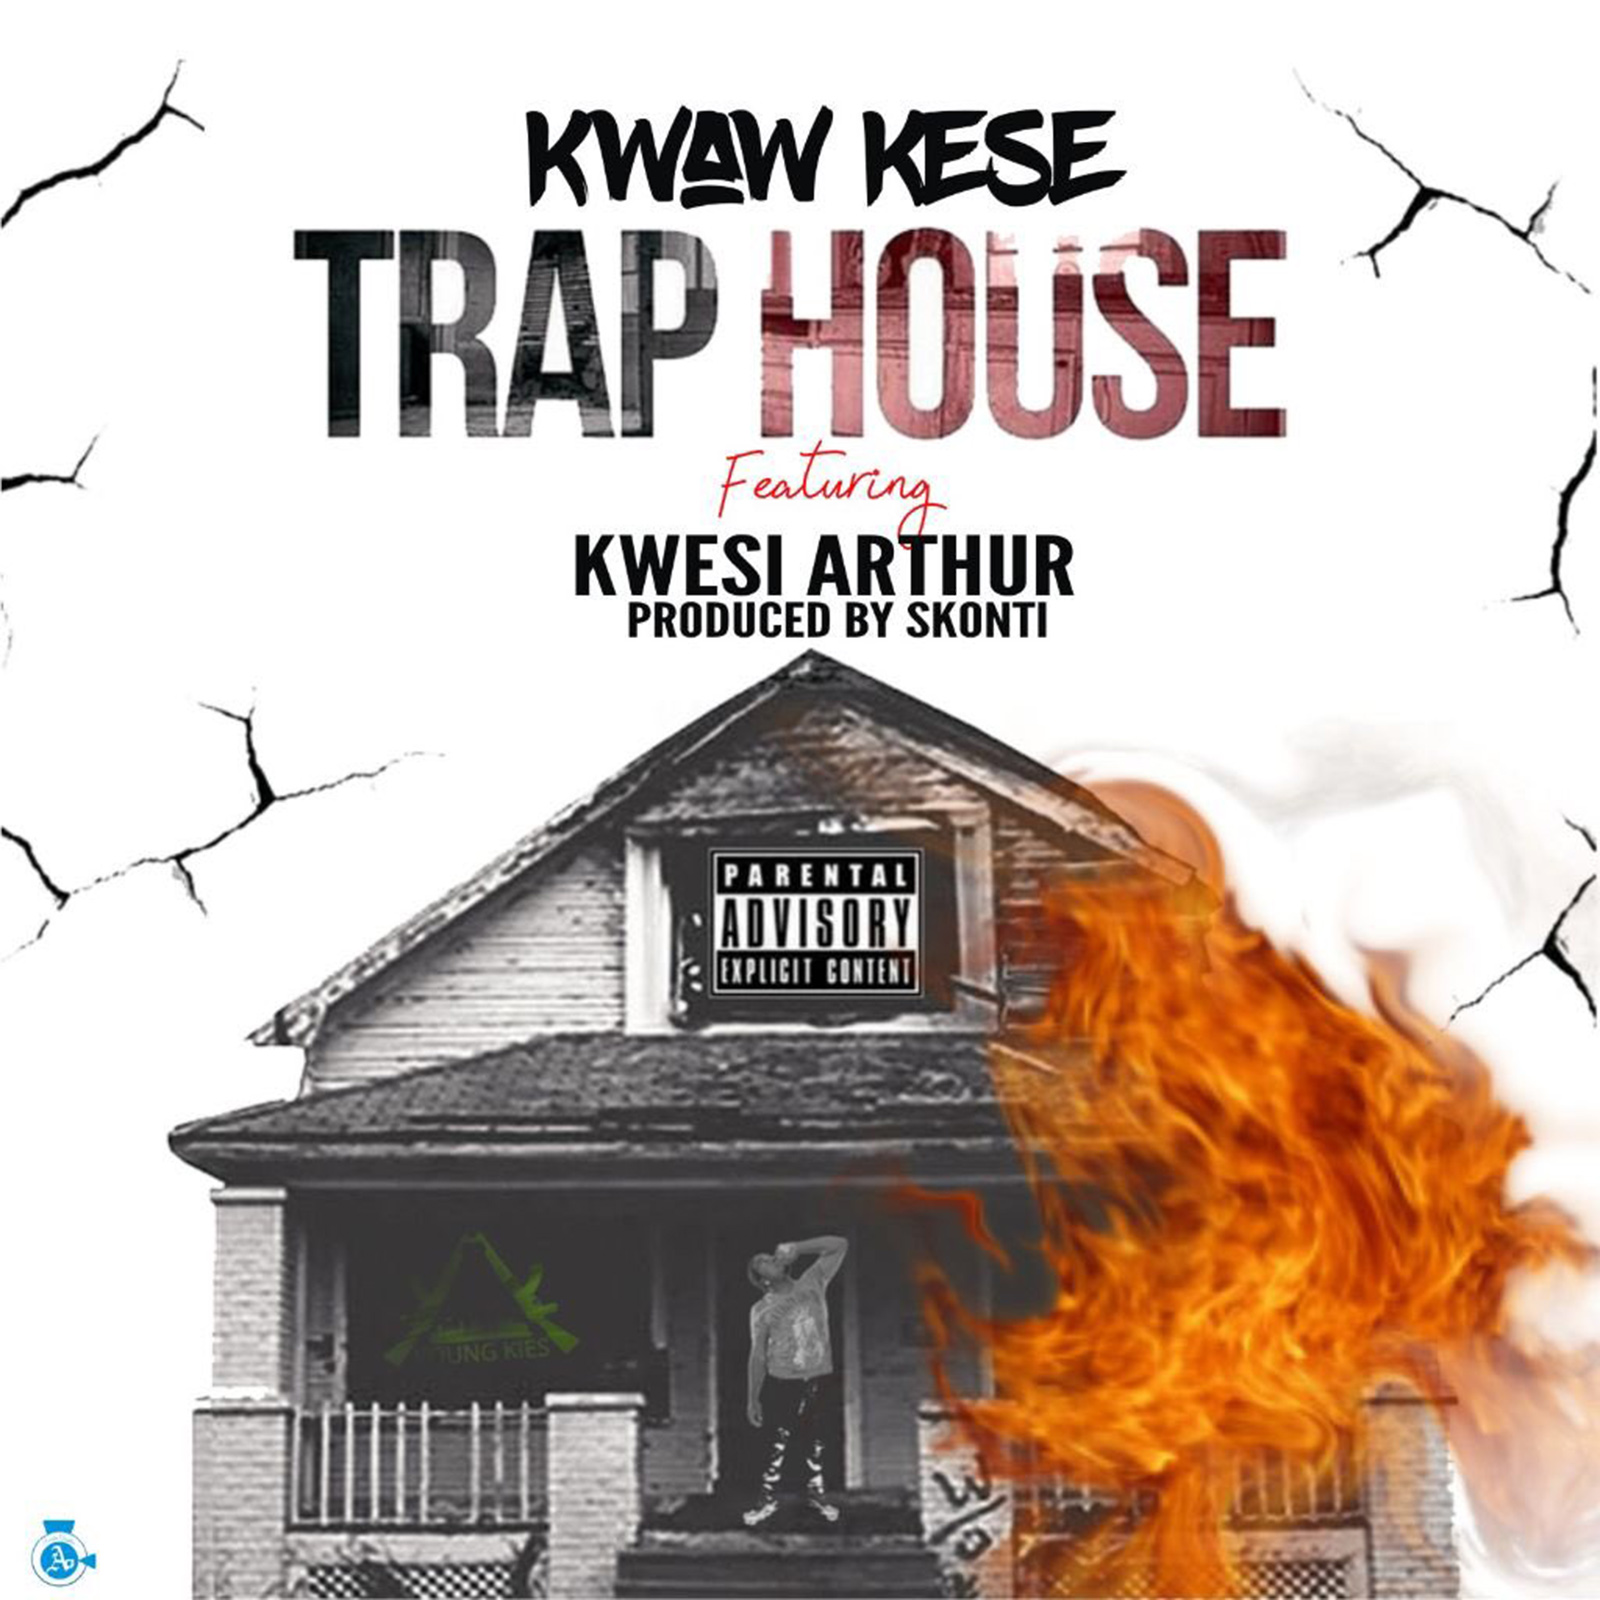 Trap House by Kwaw Kese feat. Kwesi Arthur